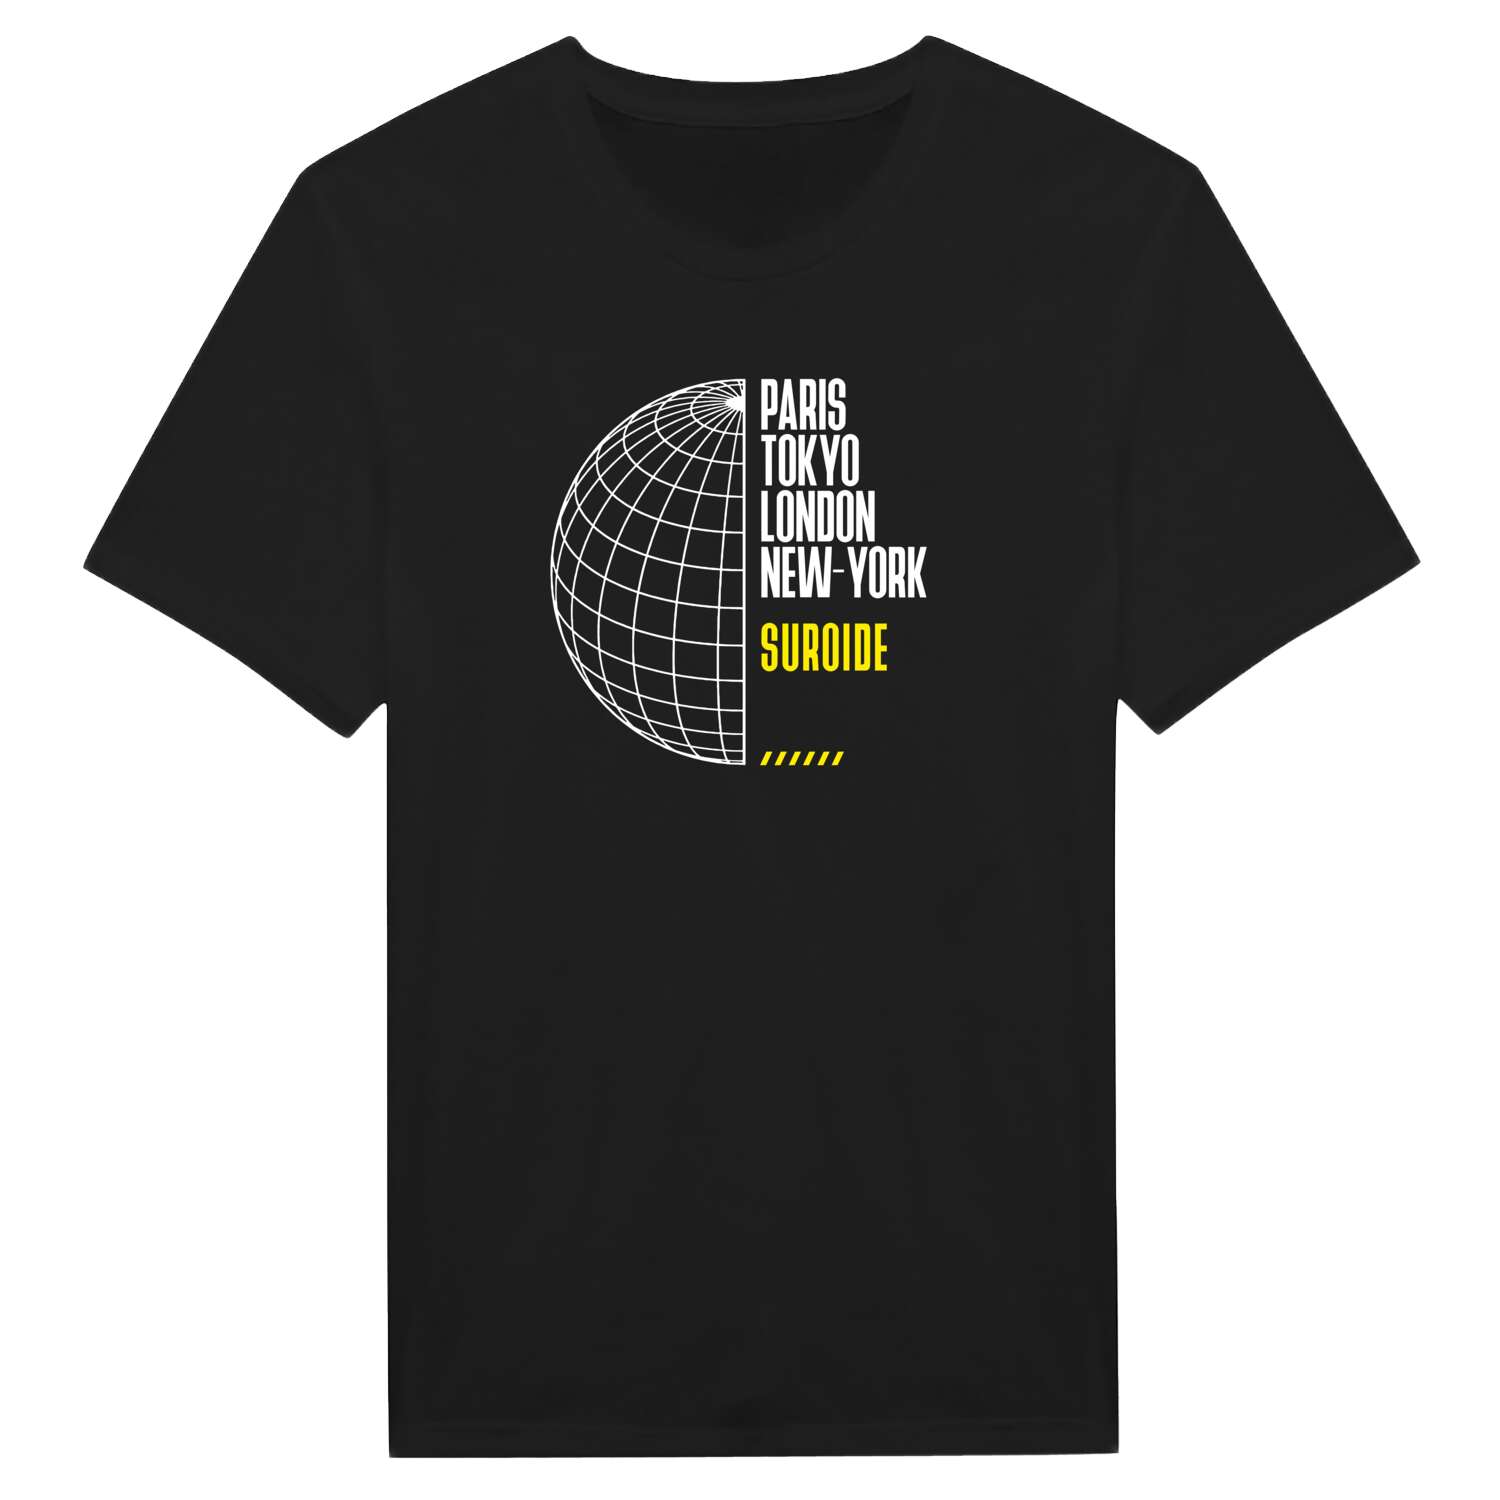 Suroide T-Shirt »Paris Tokyo London«